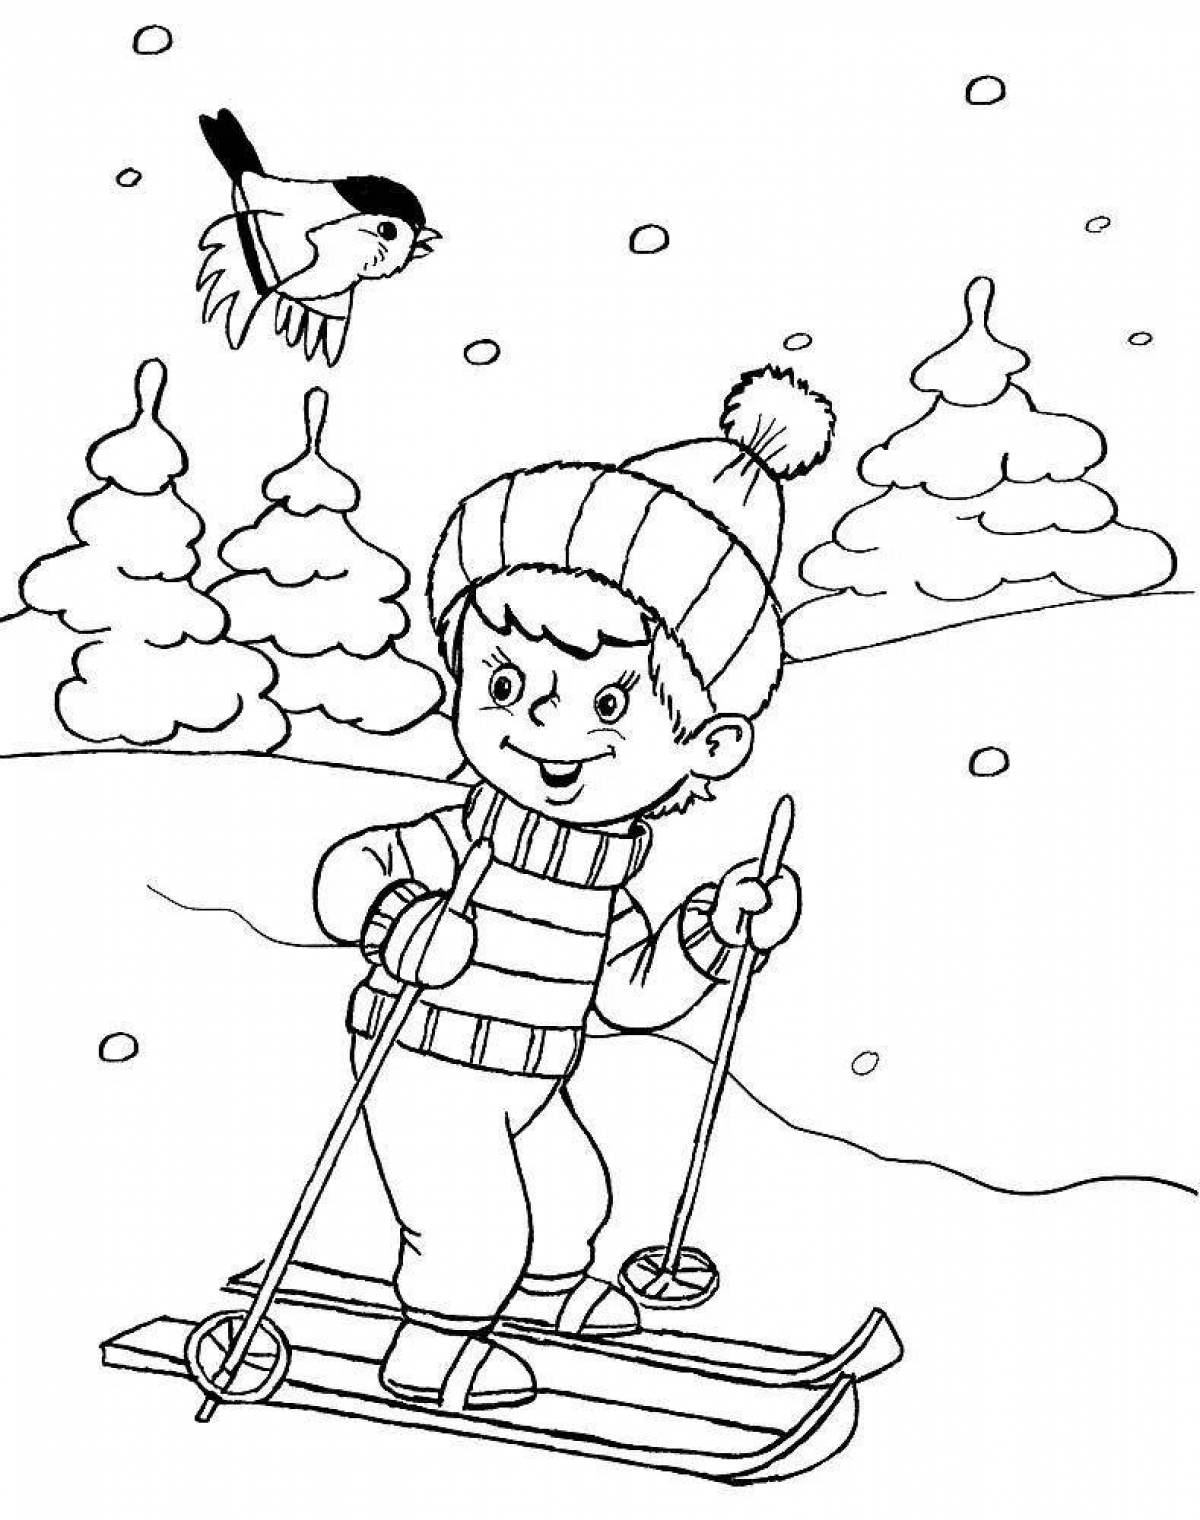 Великолепная раскраска для детей, развлекающаяся зимой